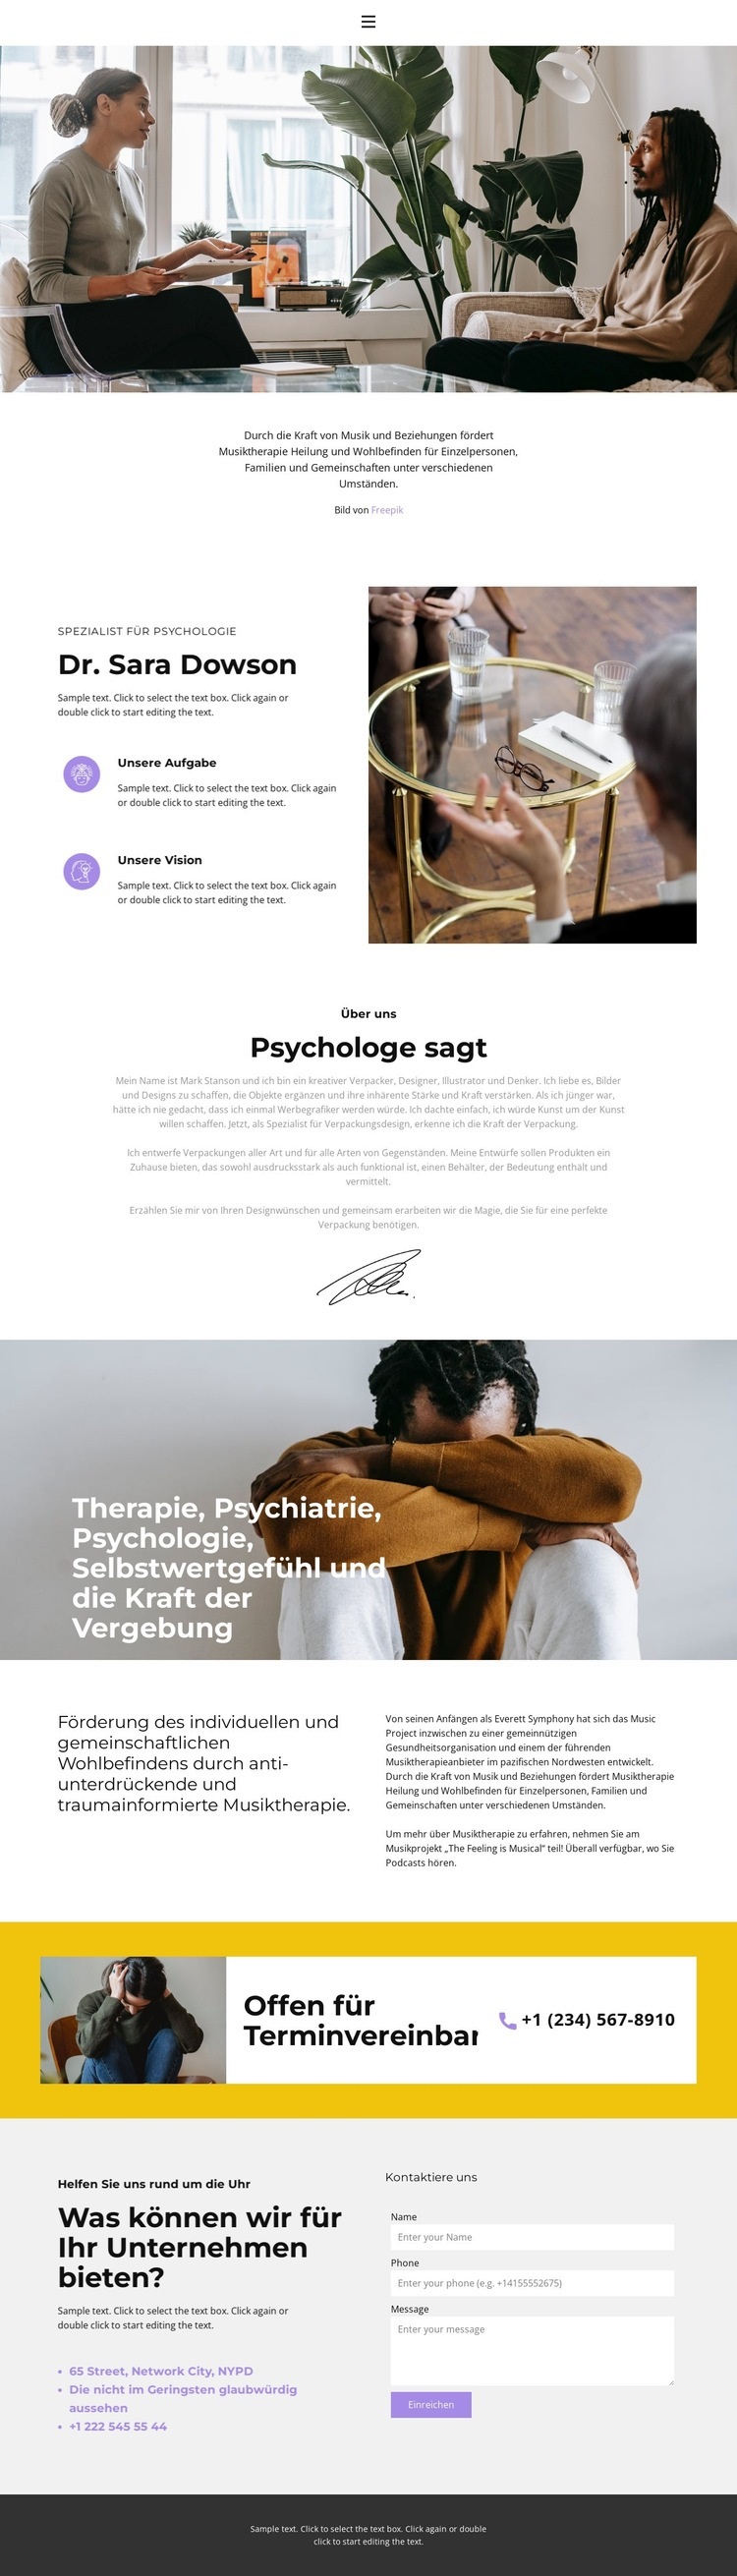 Qualifizierte Hilfe durch einen Psychologen Website design